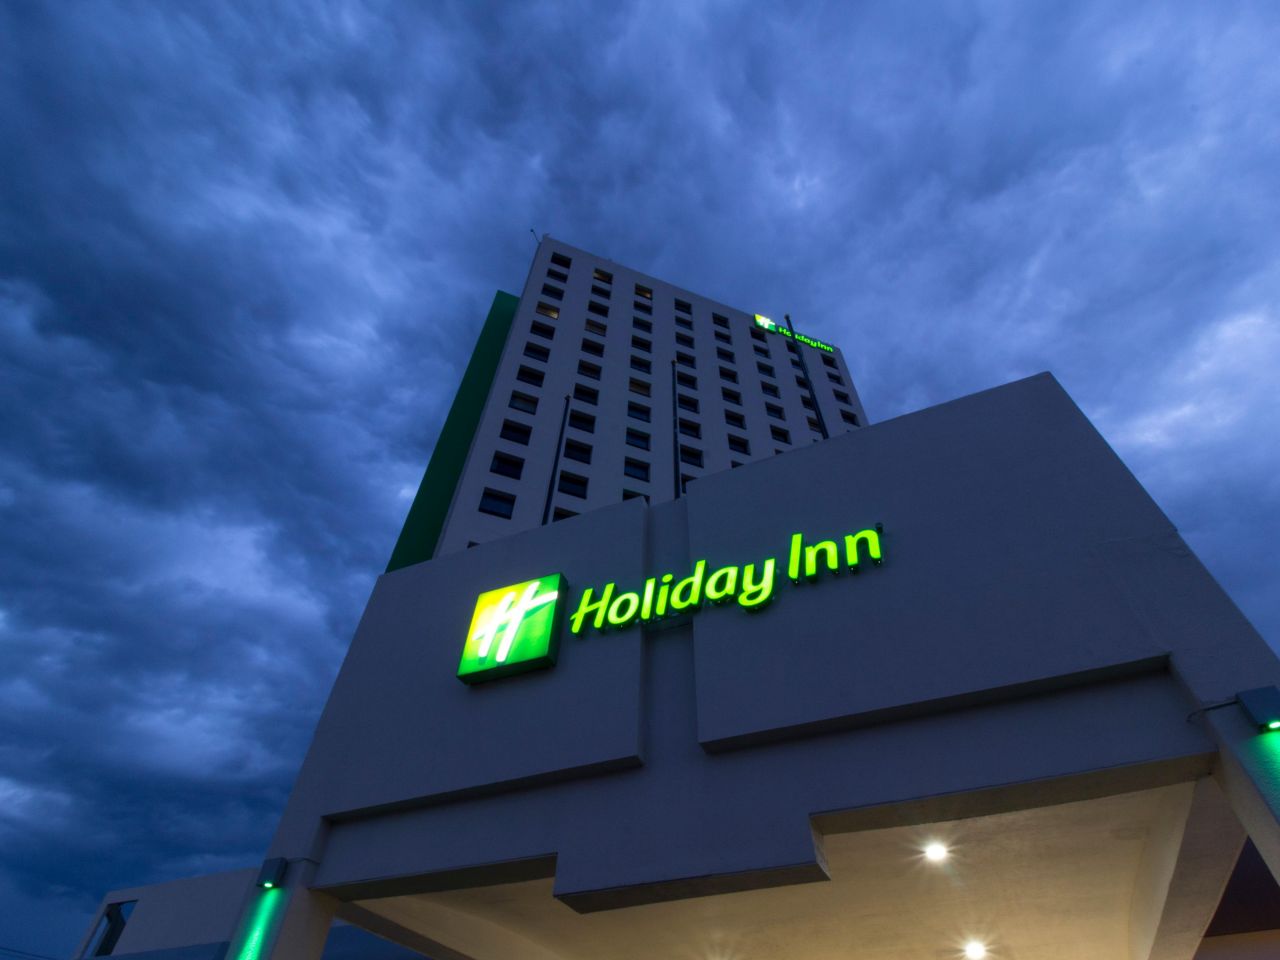 Holiday Inn Puebla la mejor opción para hospedarse 